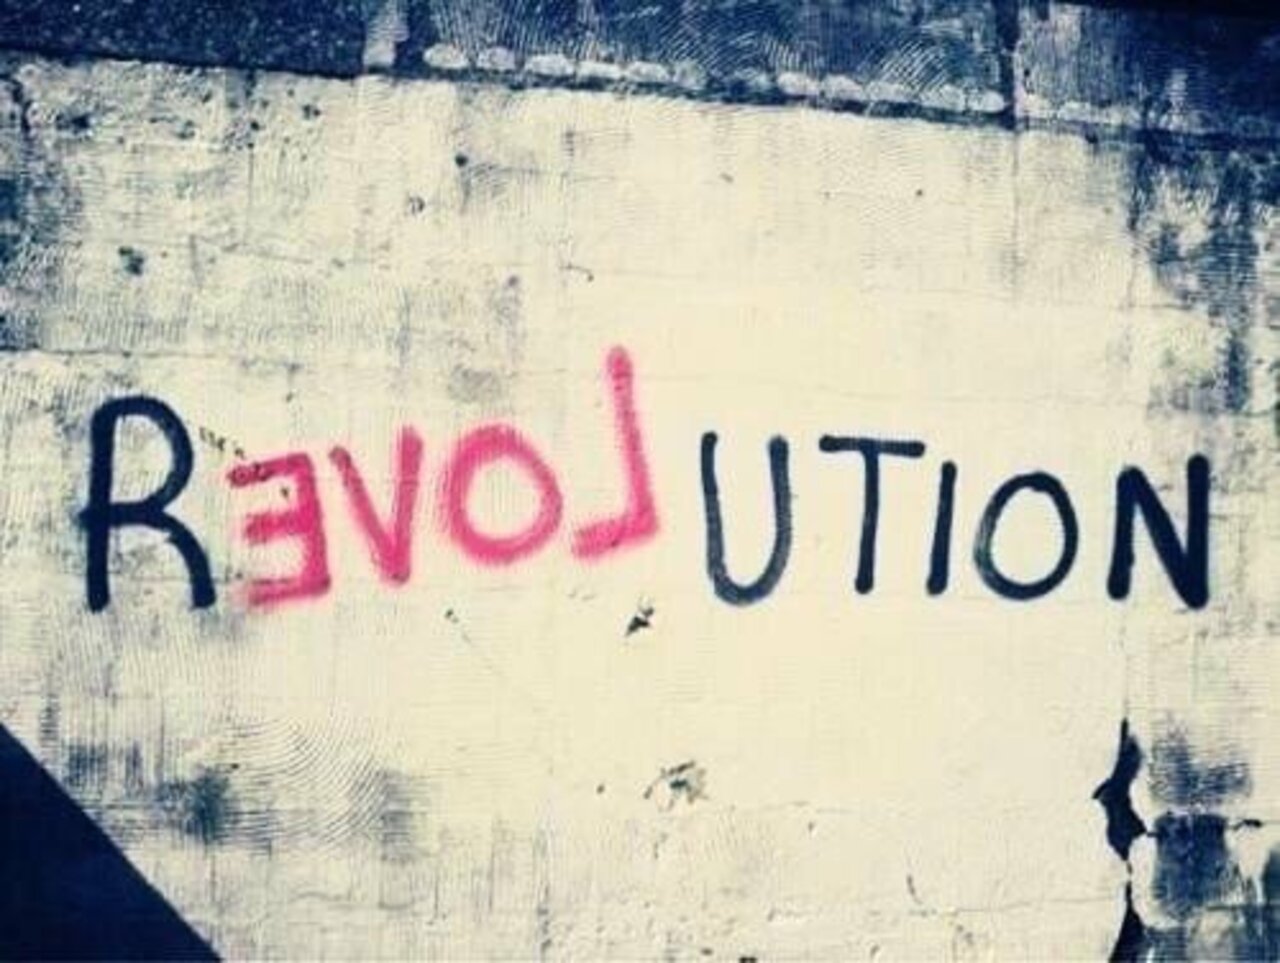 #Love Revolution – #Creative #StreetArt – Be ▲rtist – Be ▲rt Magazine https://beartistbeart.com/2016/12/02/love-revolution-creative-streetart/?utm_campaign=crowdfire&utm_content=crowdfire&utm_medium=social&utm_source=twitter https://t.co/uTHM5GEoUo